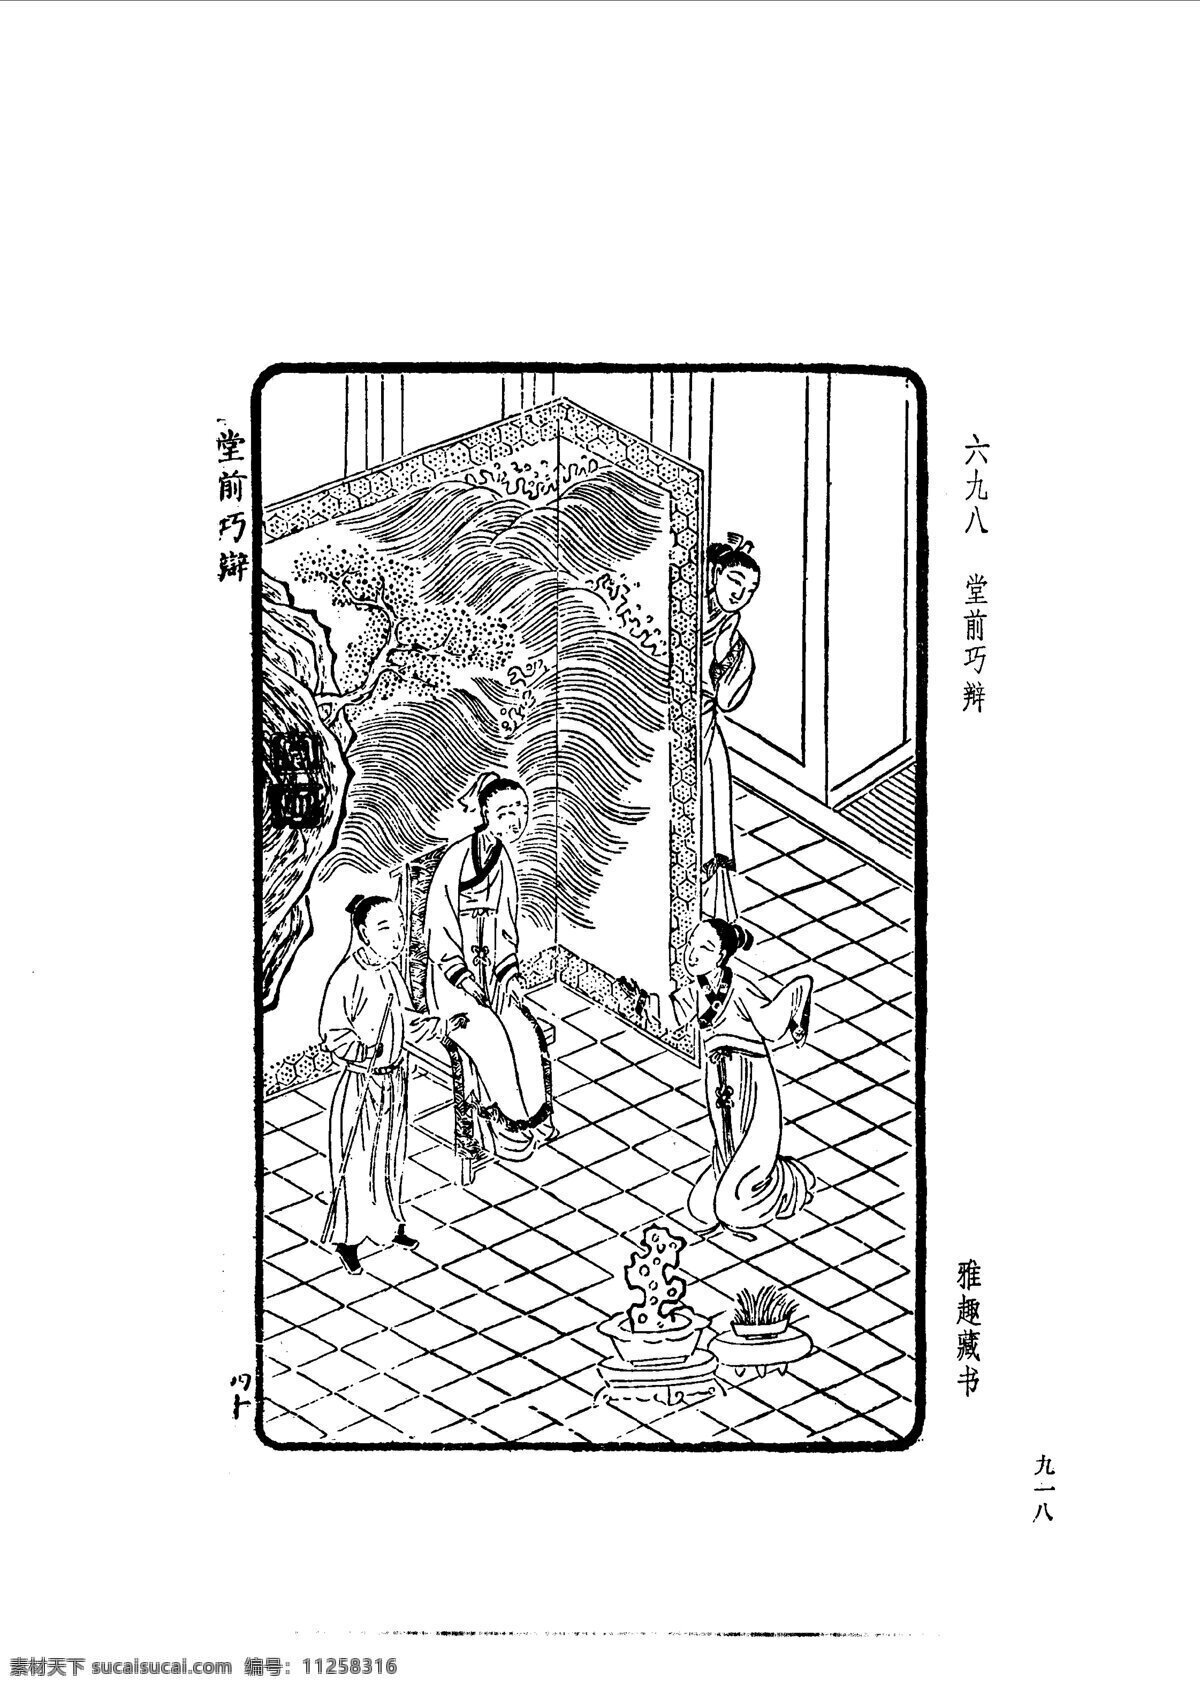 中国 古典文学 版画 选集 上 下册0946 设计素材 版画世界 书画美术 白色